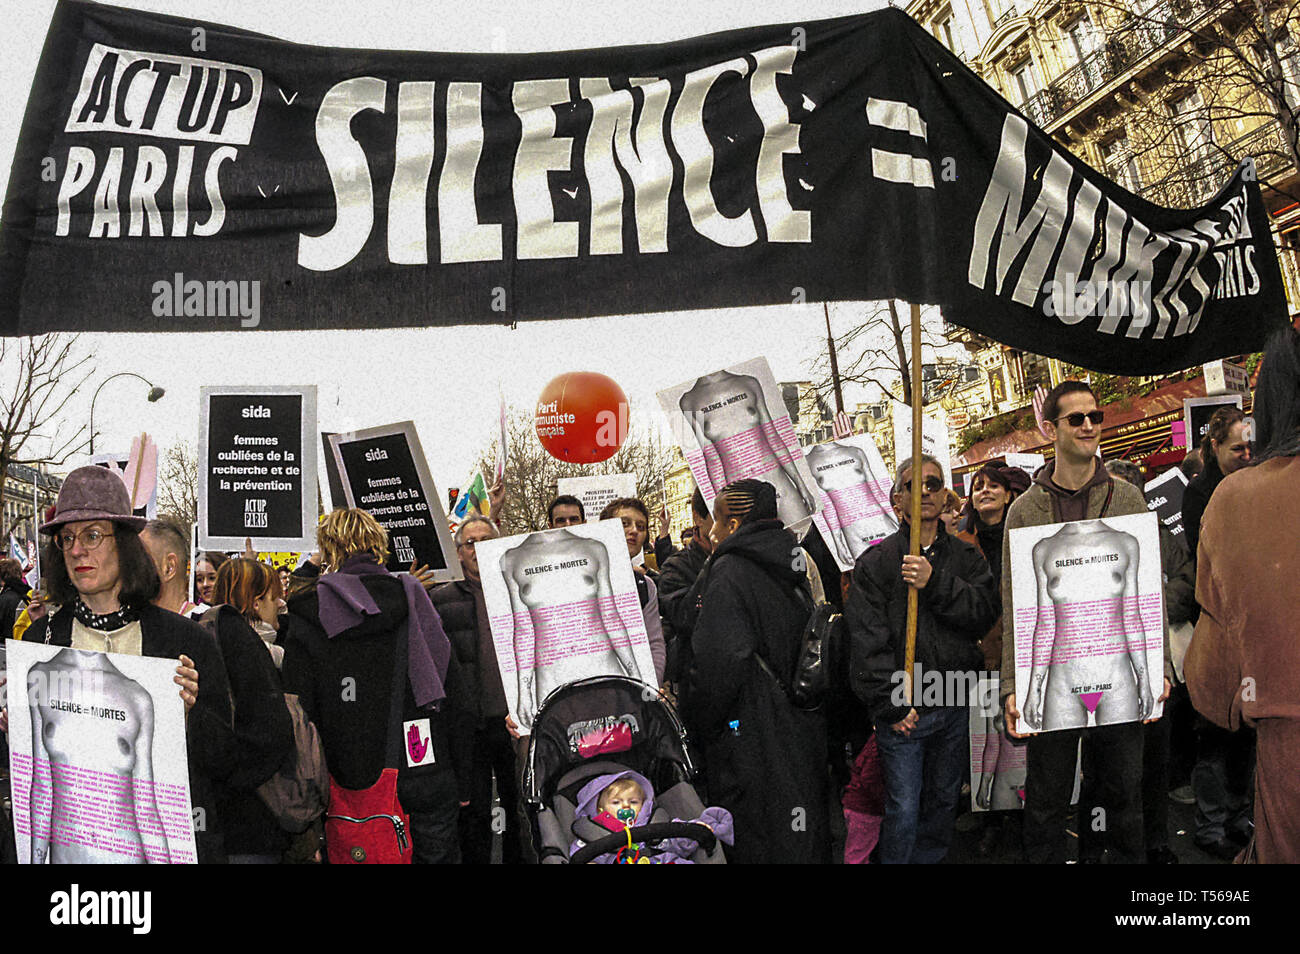 PARIS - Grande foule, Front, Journée internationale de la femme, 8 mars, Act Up Paris, combattre le sida, manifester pour les droits des femmes, contre le sida, 8 mars, slogans de justice sociale Banque D'Images